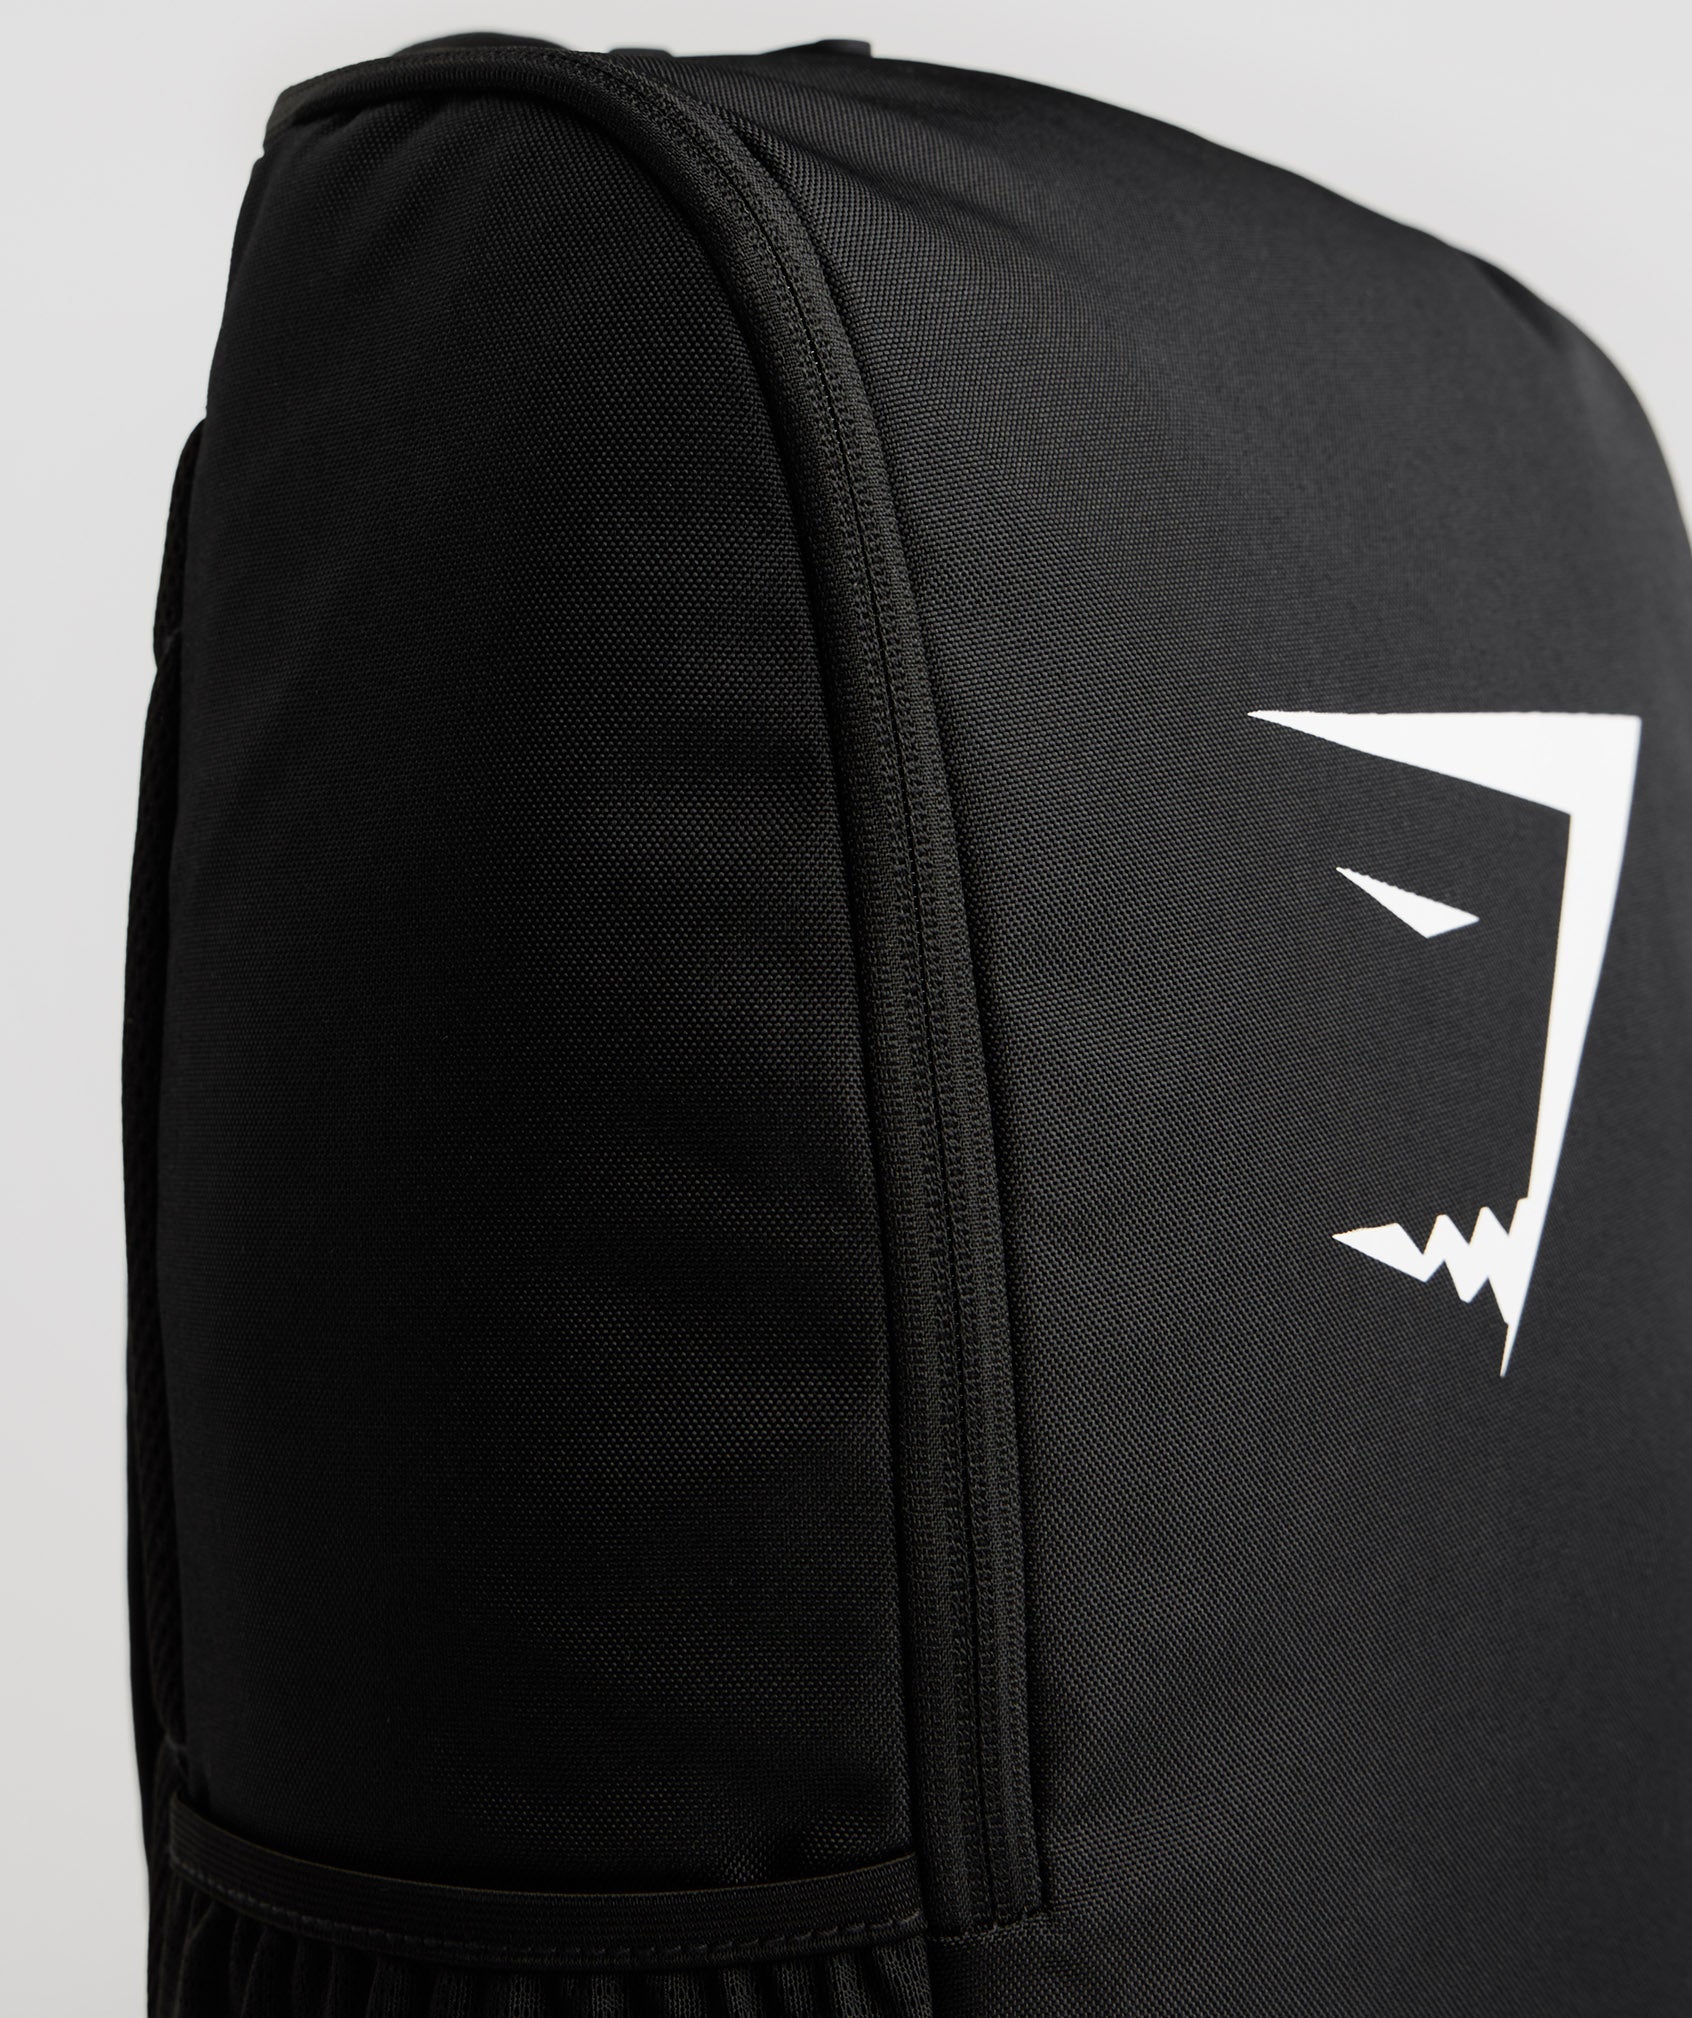 Sharkhead Backpack in Black